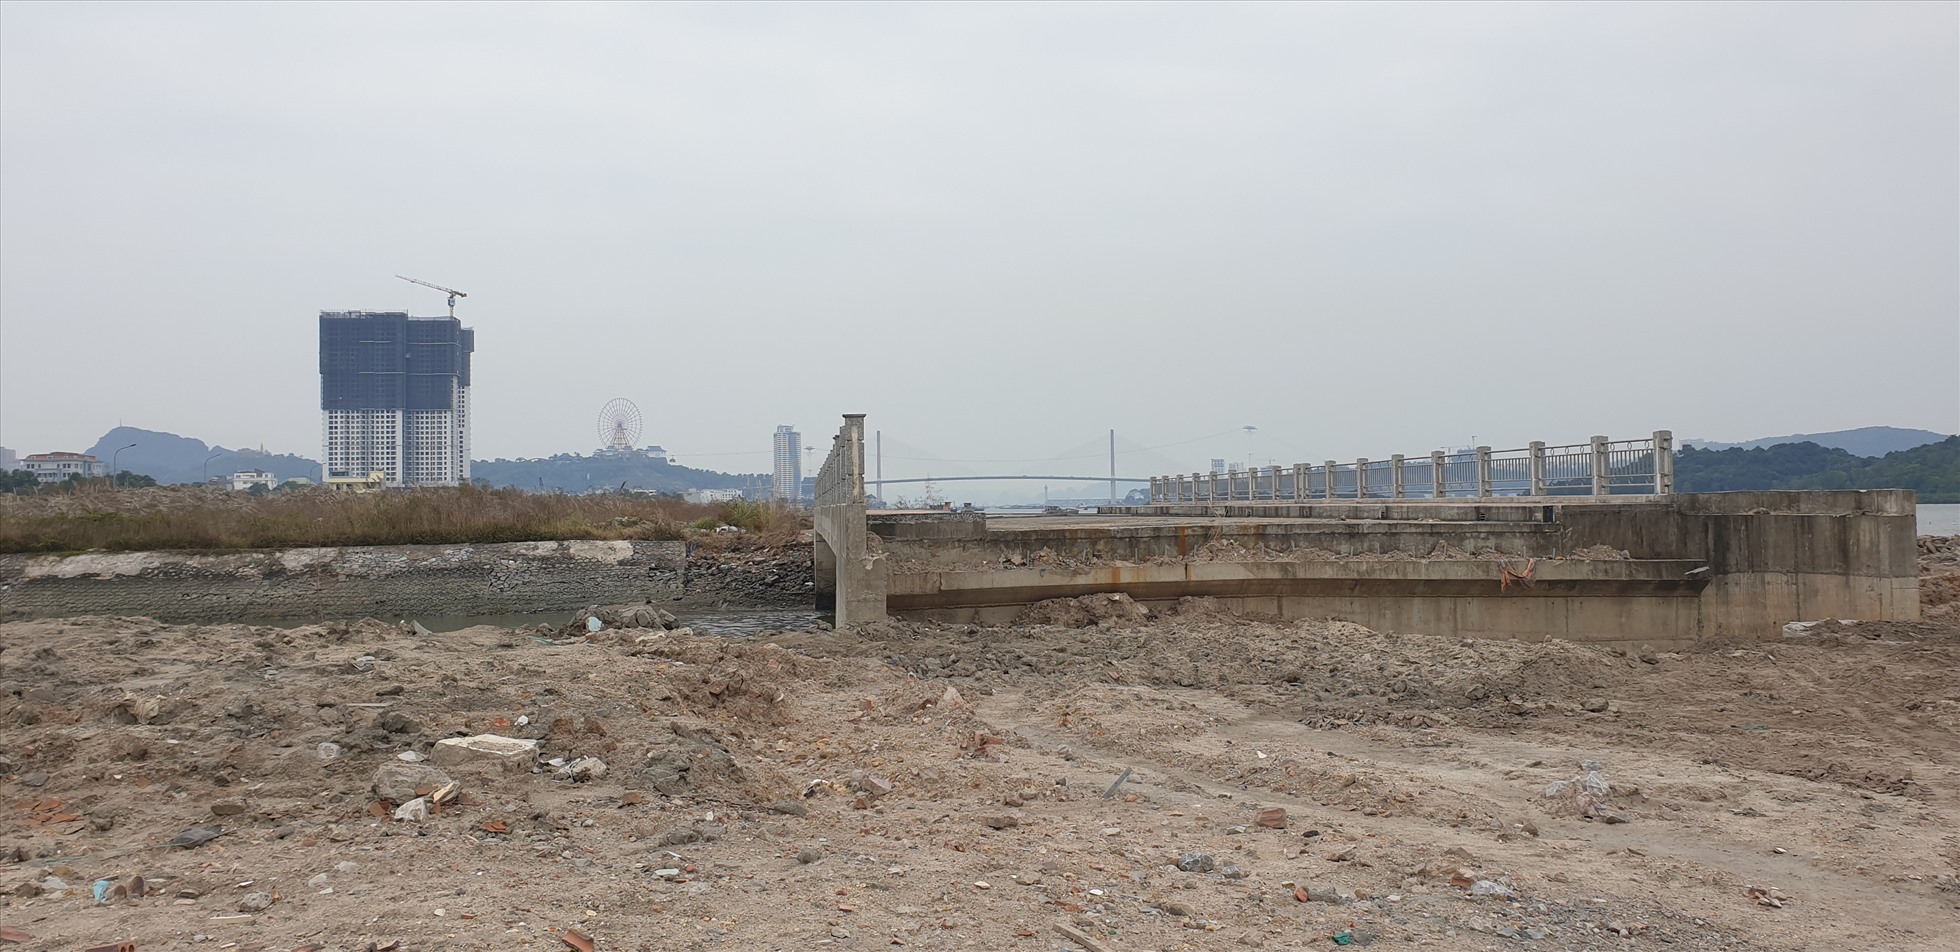 Đường ven biển từ chân cầu Bãi Cháy chạy qua Khu đô thị Cao Xanh - Hà Khánh, kết nối với cầu Cửa Lục 3 đang được thi công. Ảnh: Nguyễn Hùng